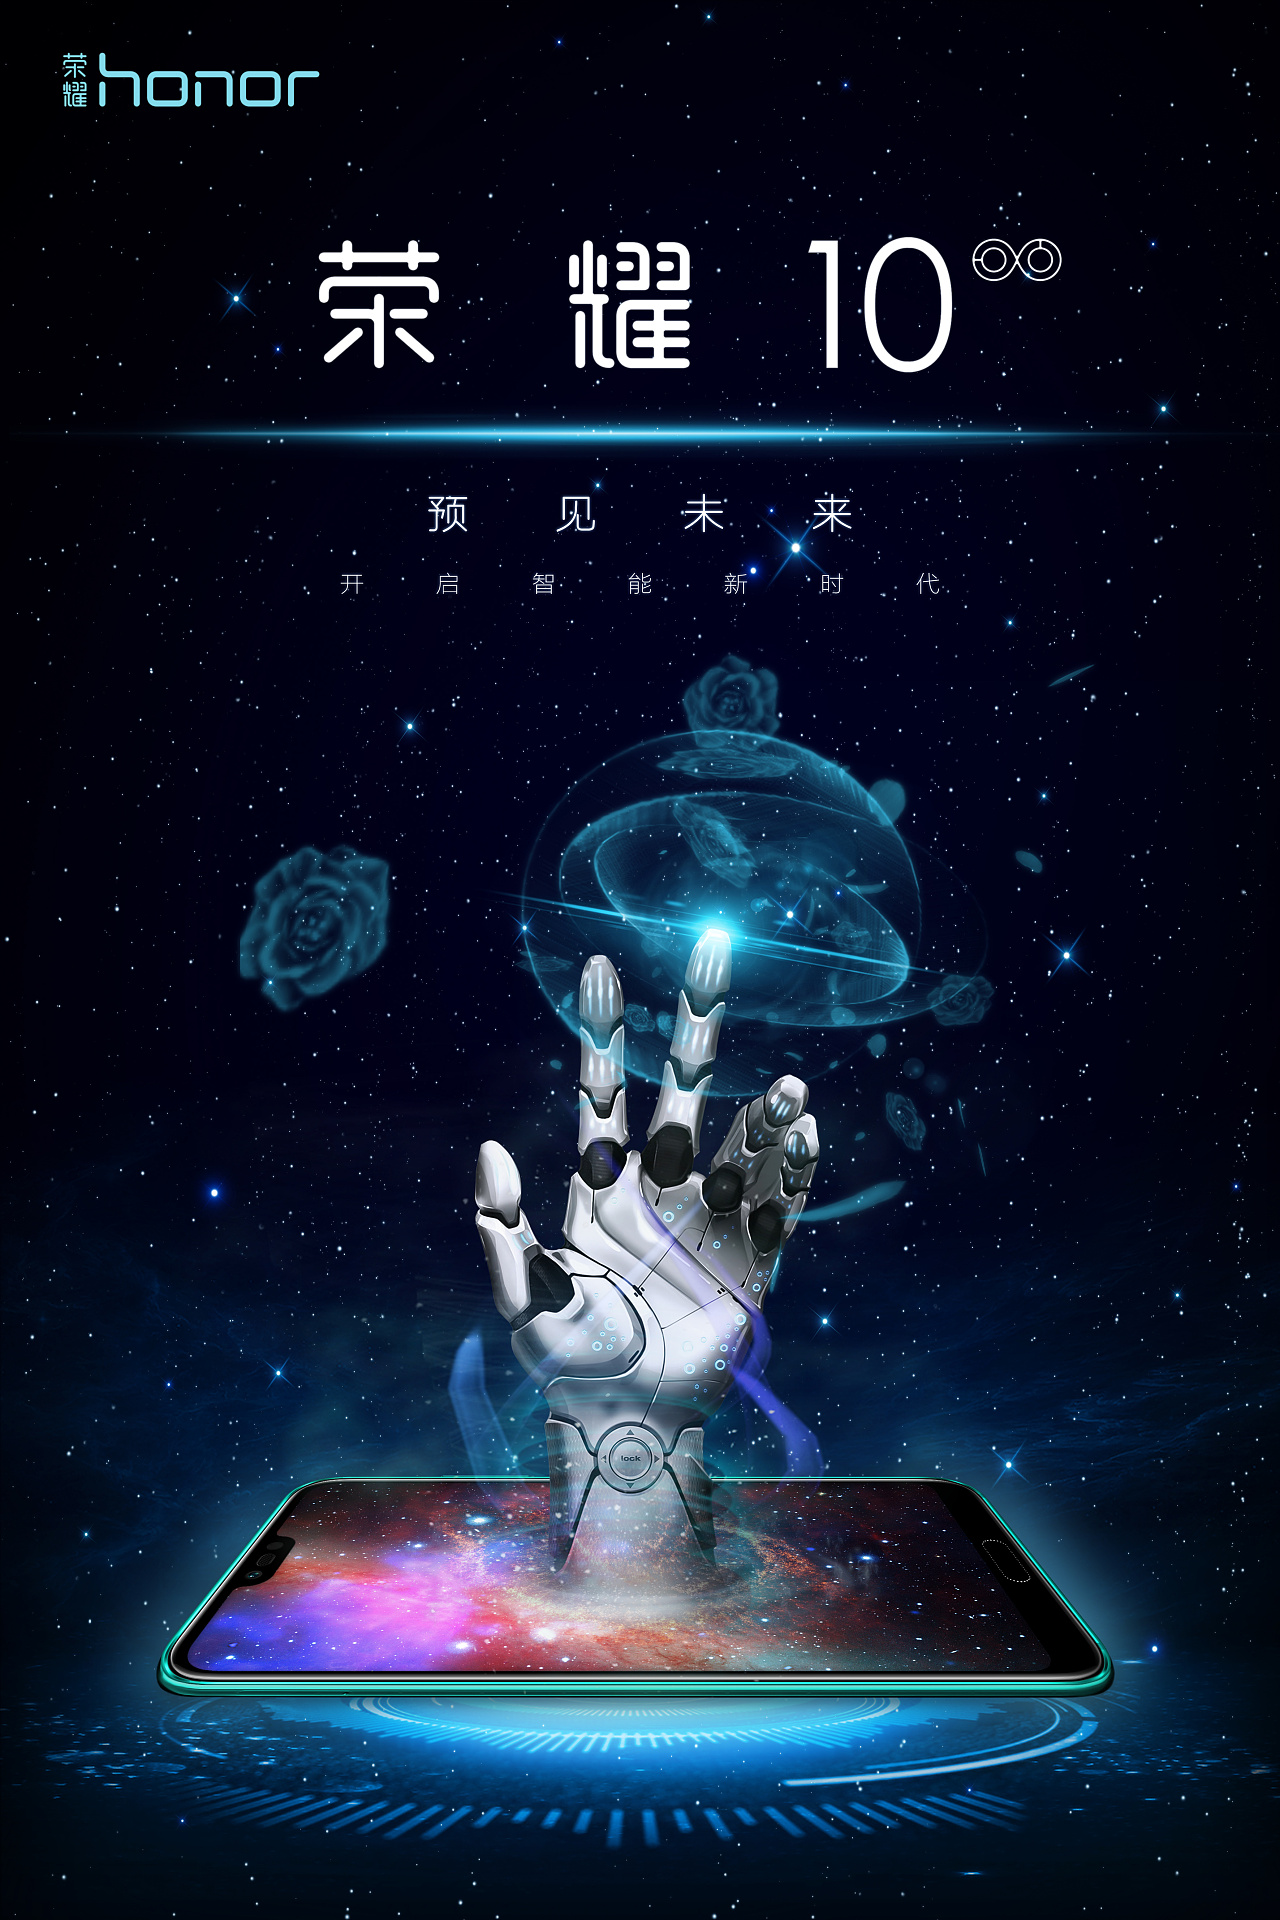 2018年第十届大广赛华为荣耀手机的平面海报参赛旧作.